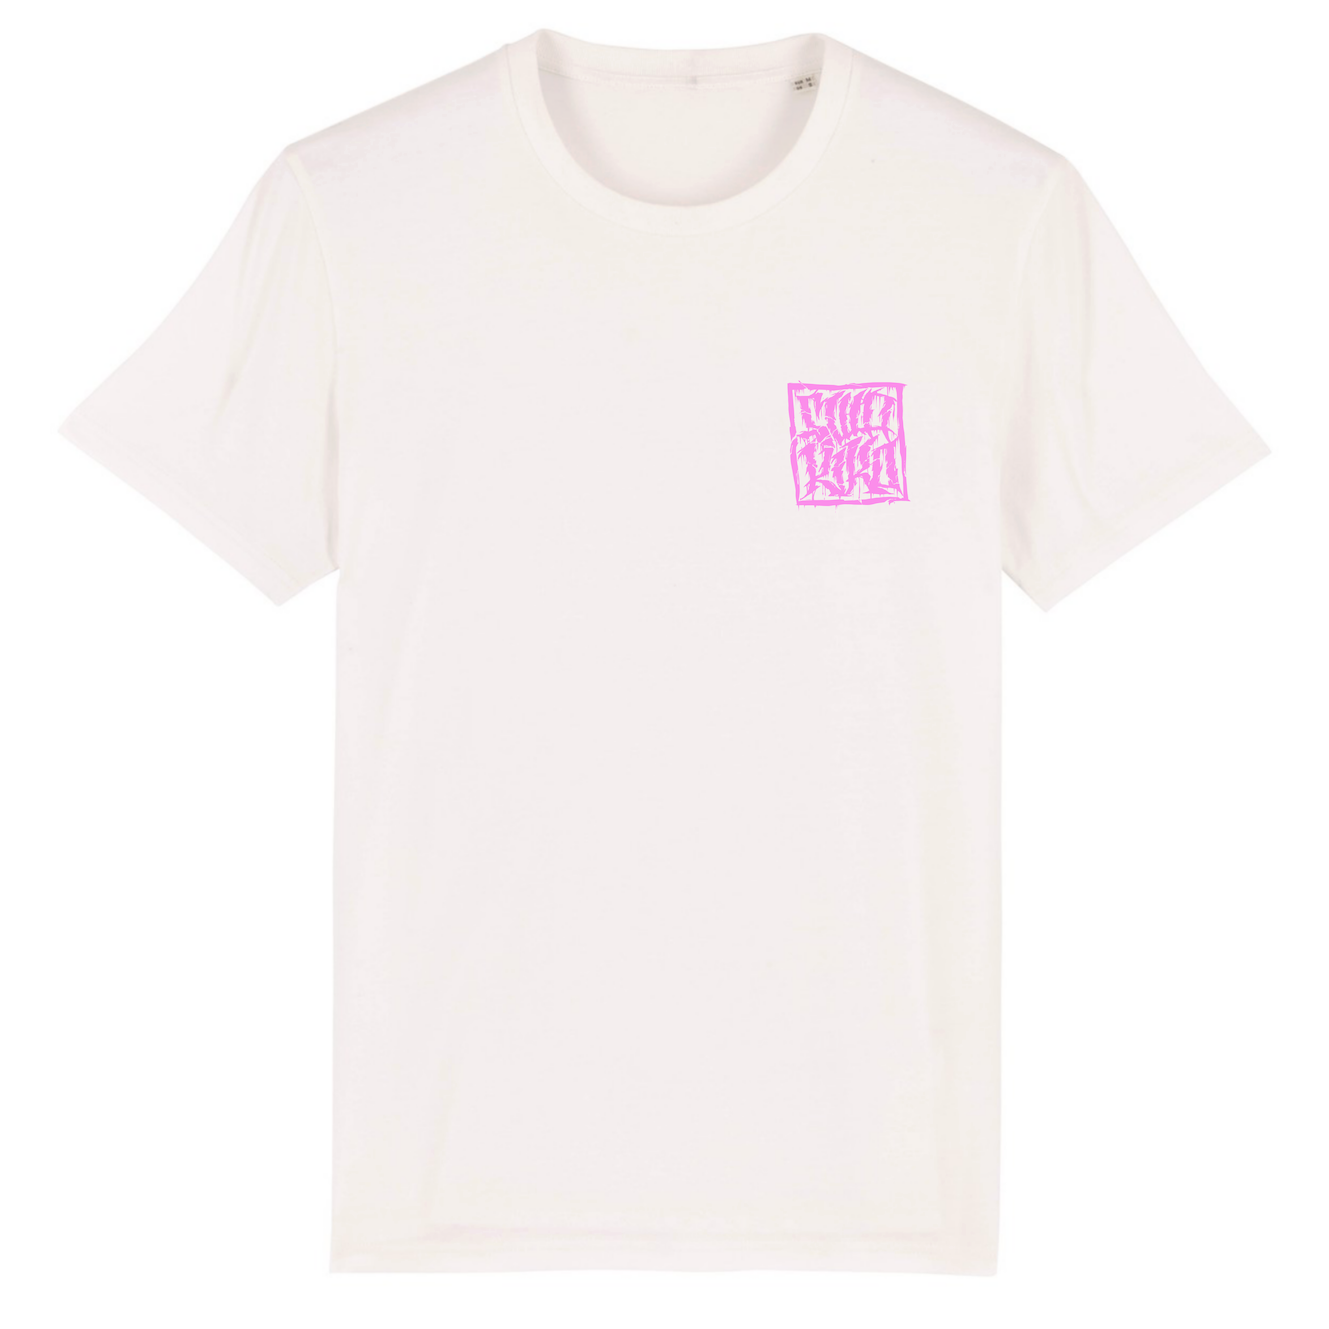 Voorkant van een wit T-shirt met roze SWAKiKO logo